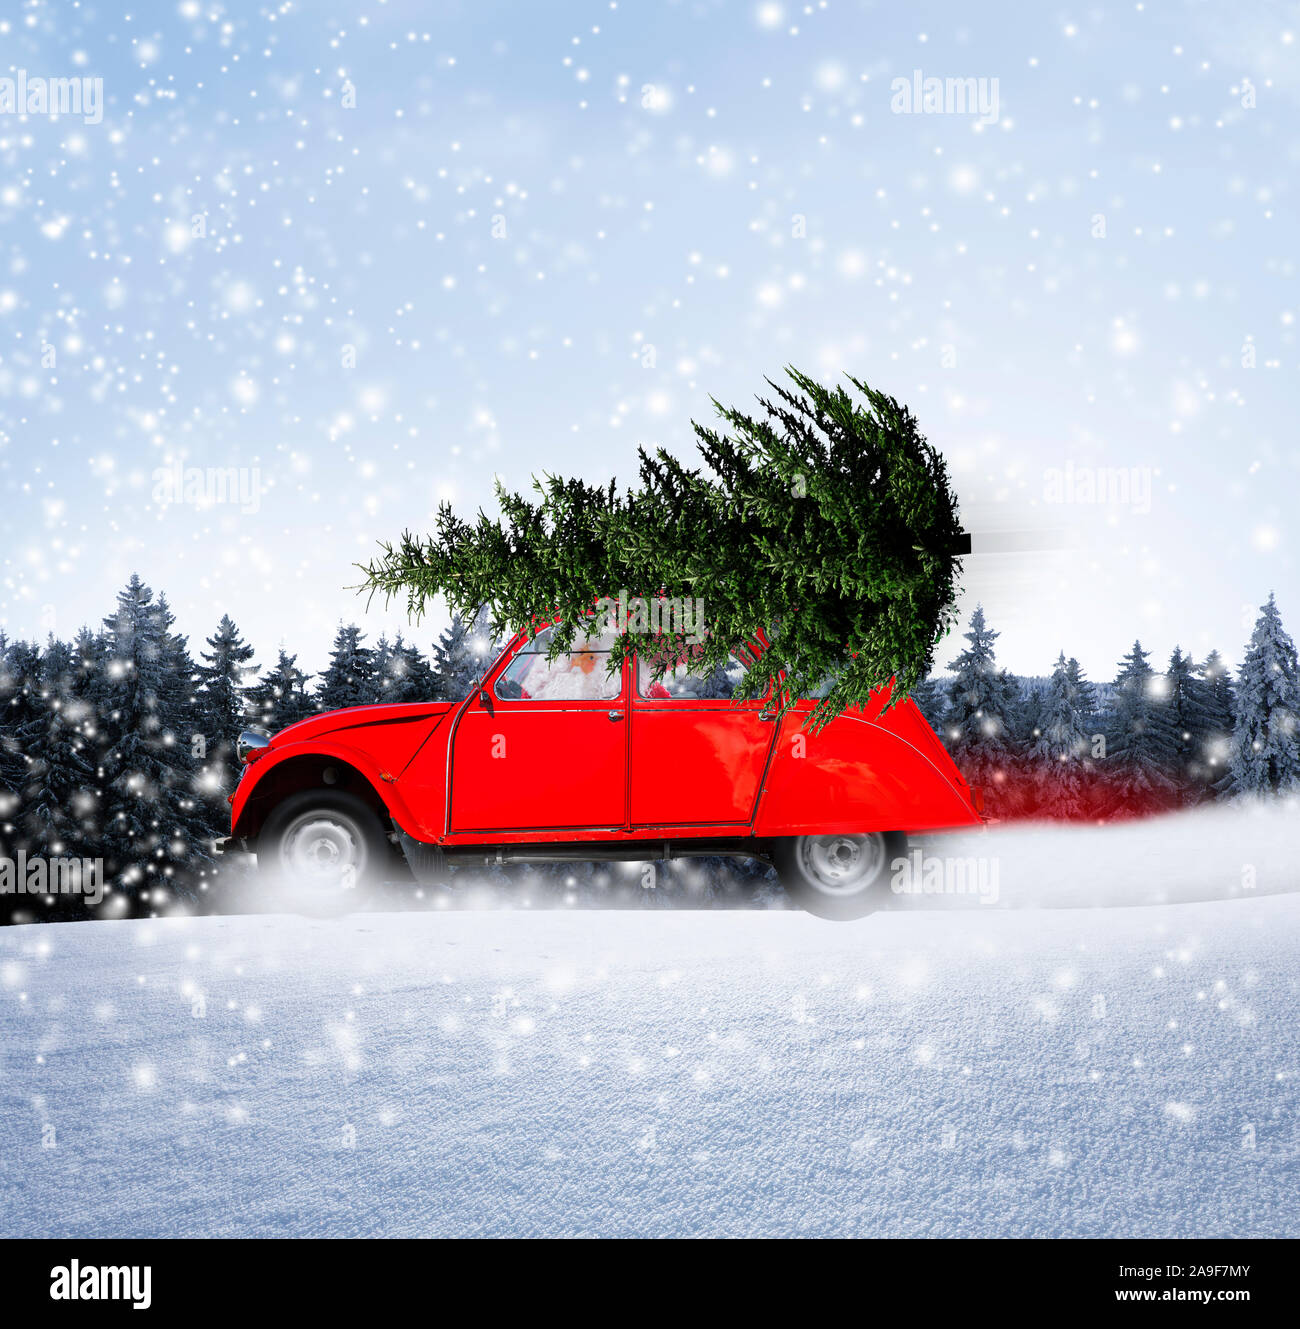 Christmas car with Christmas tree Stock Photo